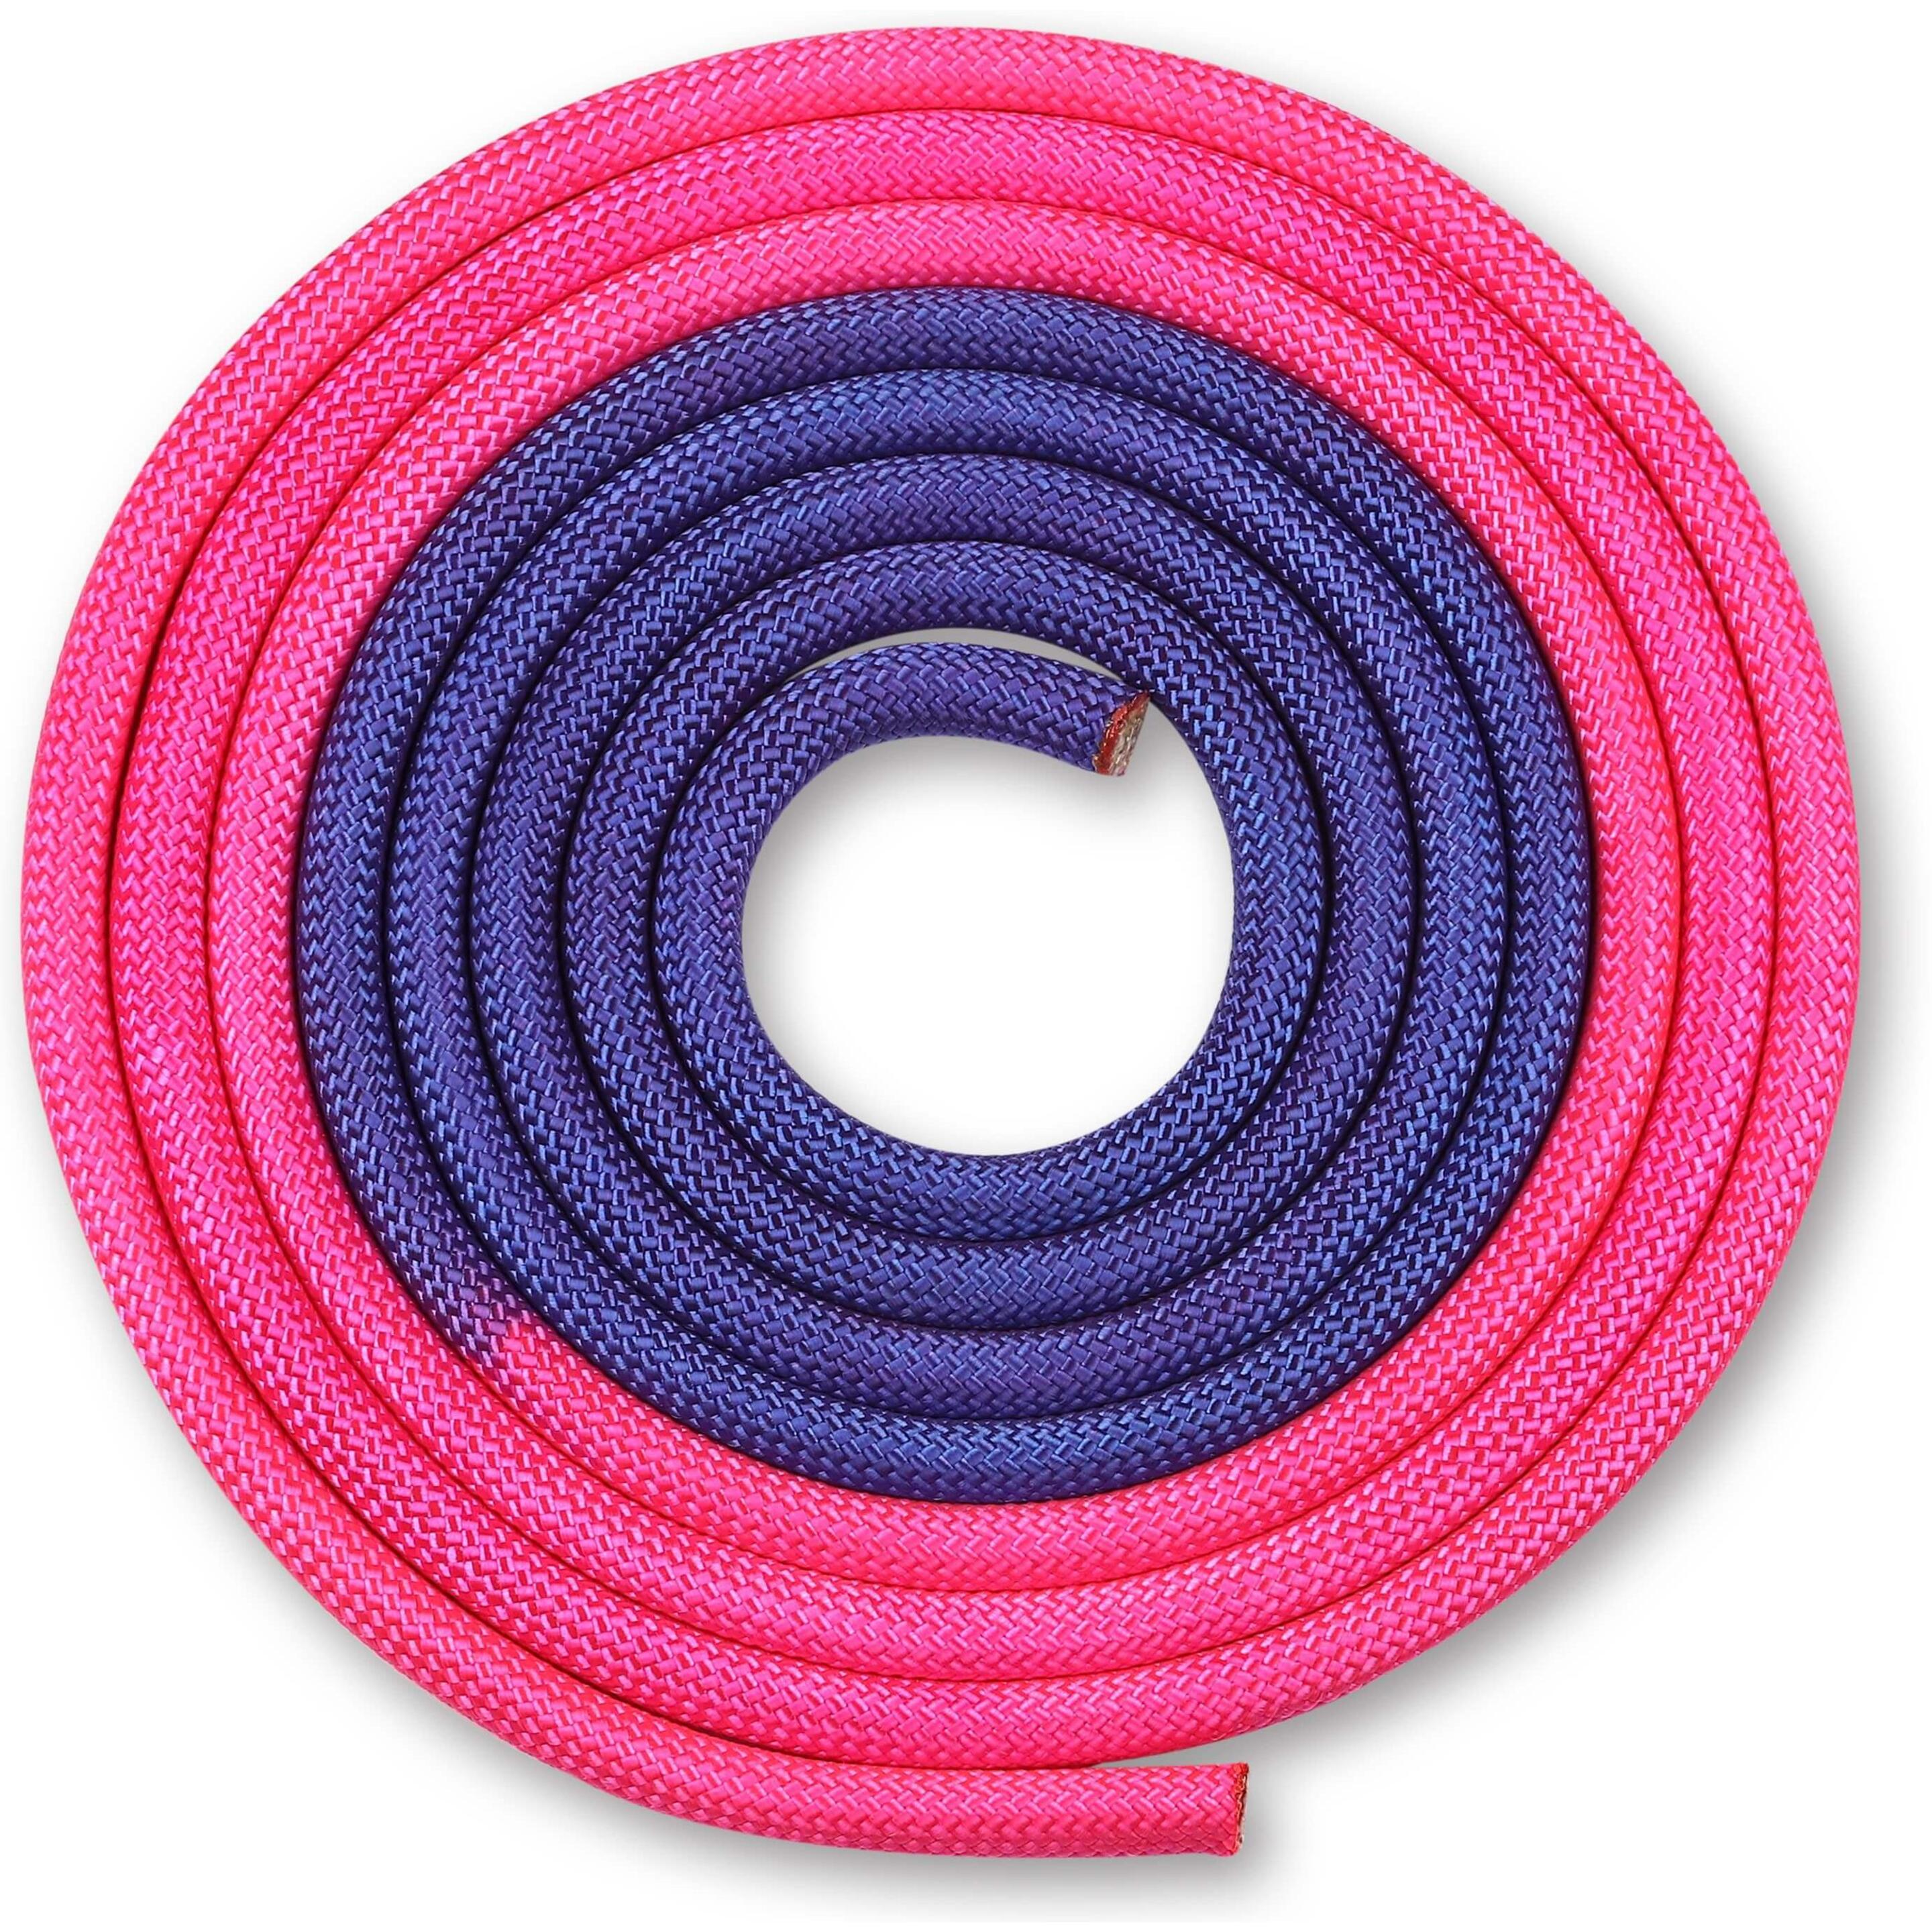 Cuerda Para Gimnasia Rítmica Ponderada 165g Indigo Bicolor 3 M - Violeta  MKP